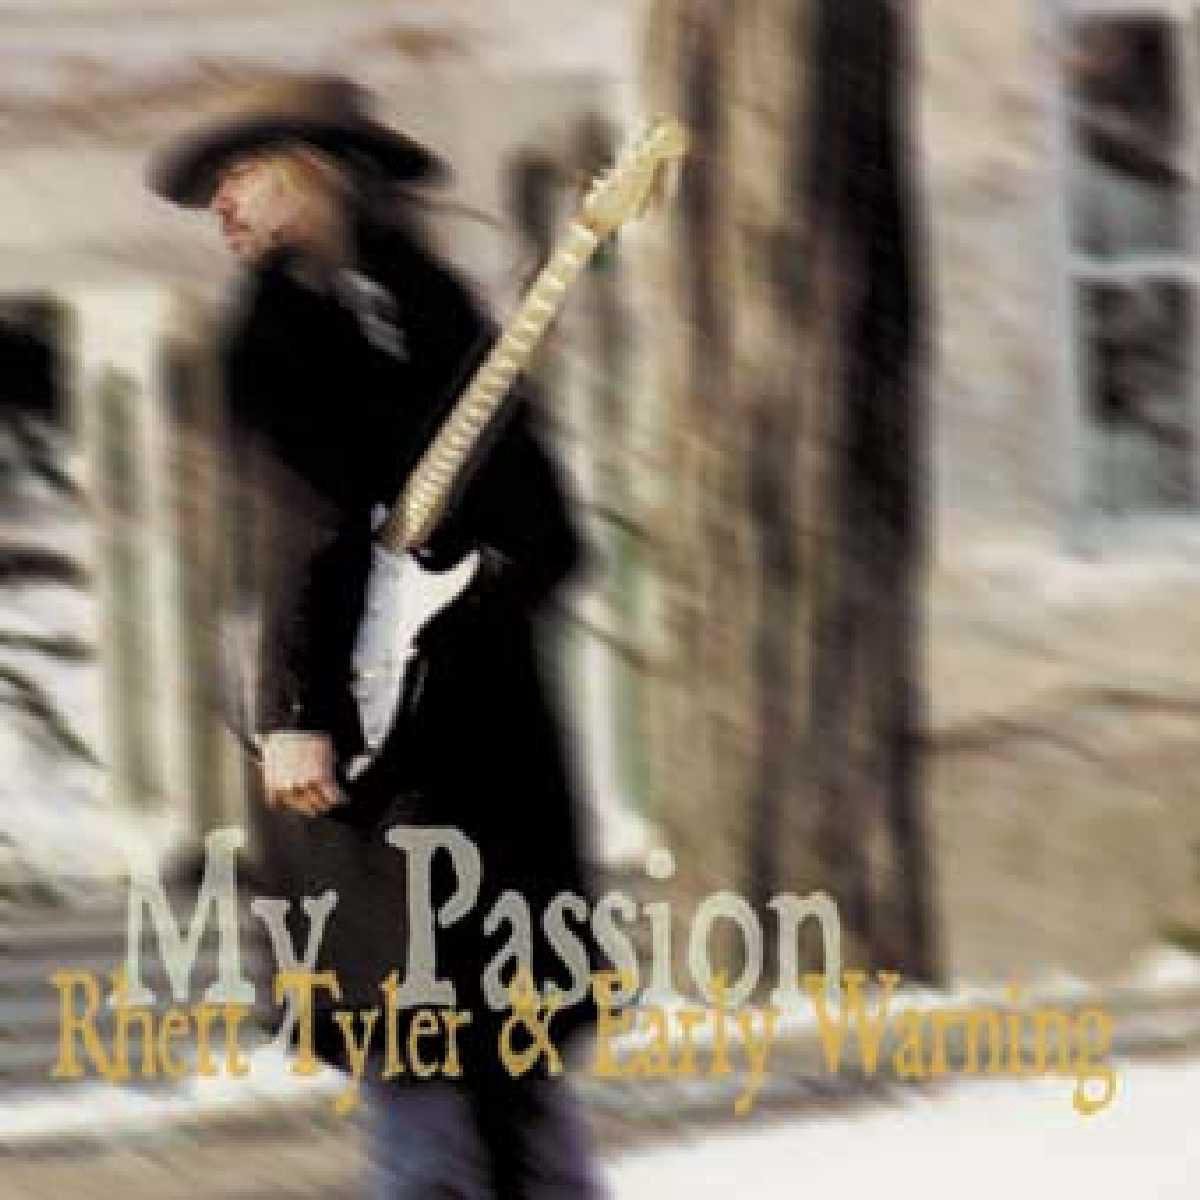 Rhett Tyler & Early Warning - My Passion in DTS-wav (op speciaal verzoek)